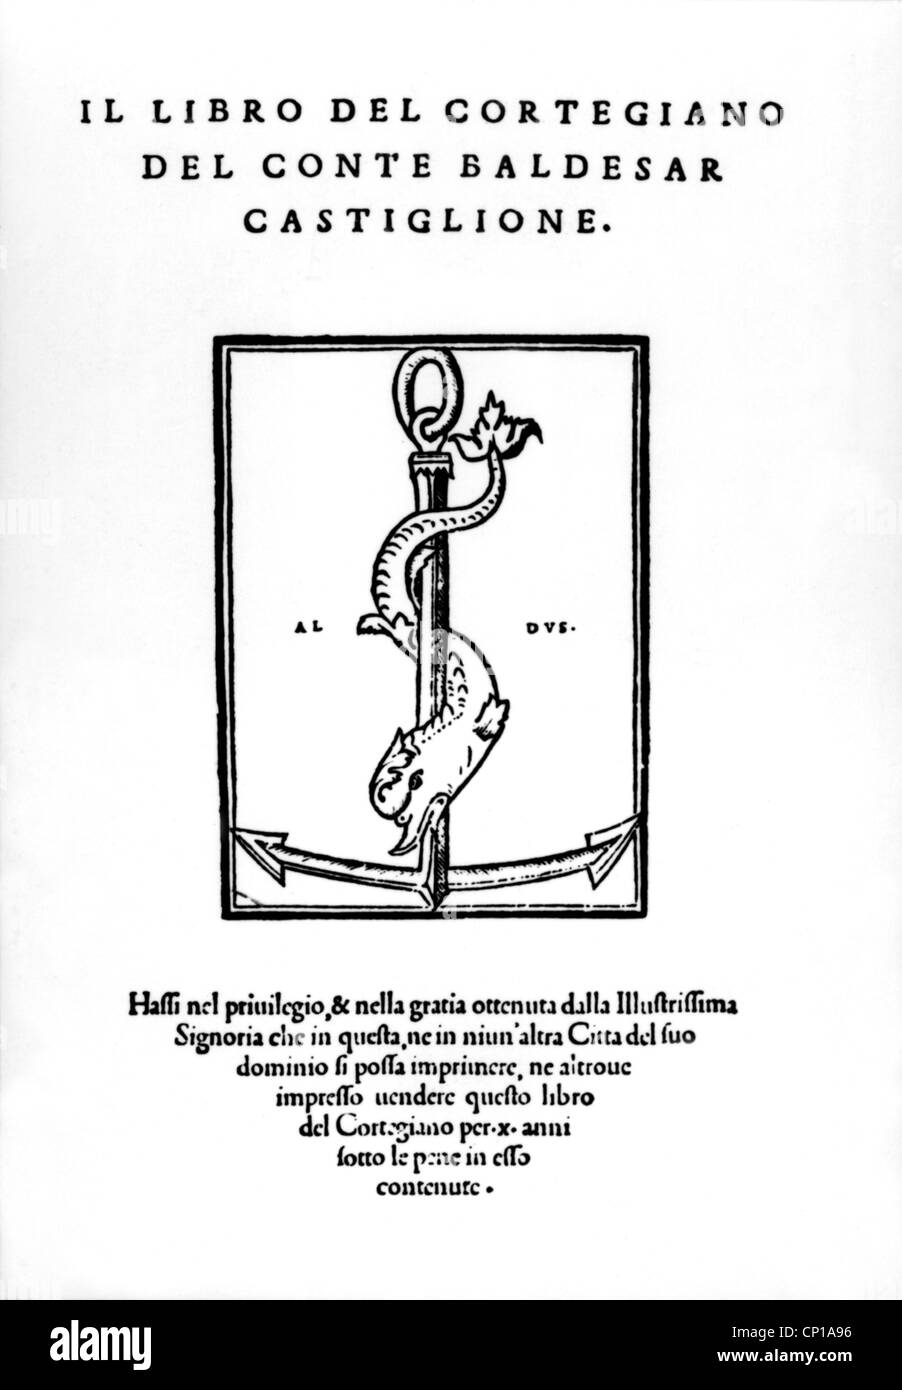 Castiglione, Baldassare Graf, 6.12.1478 - 7.2.1529, Italian author / writer and politician, work 'Il libro del cortegiano', cover, Venice, 1528, Stock Photo